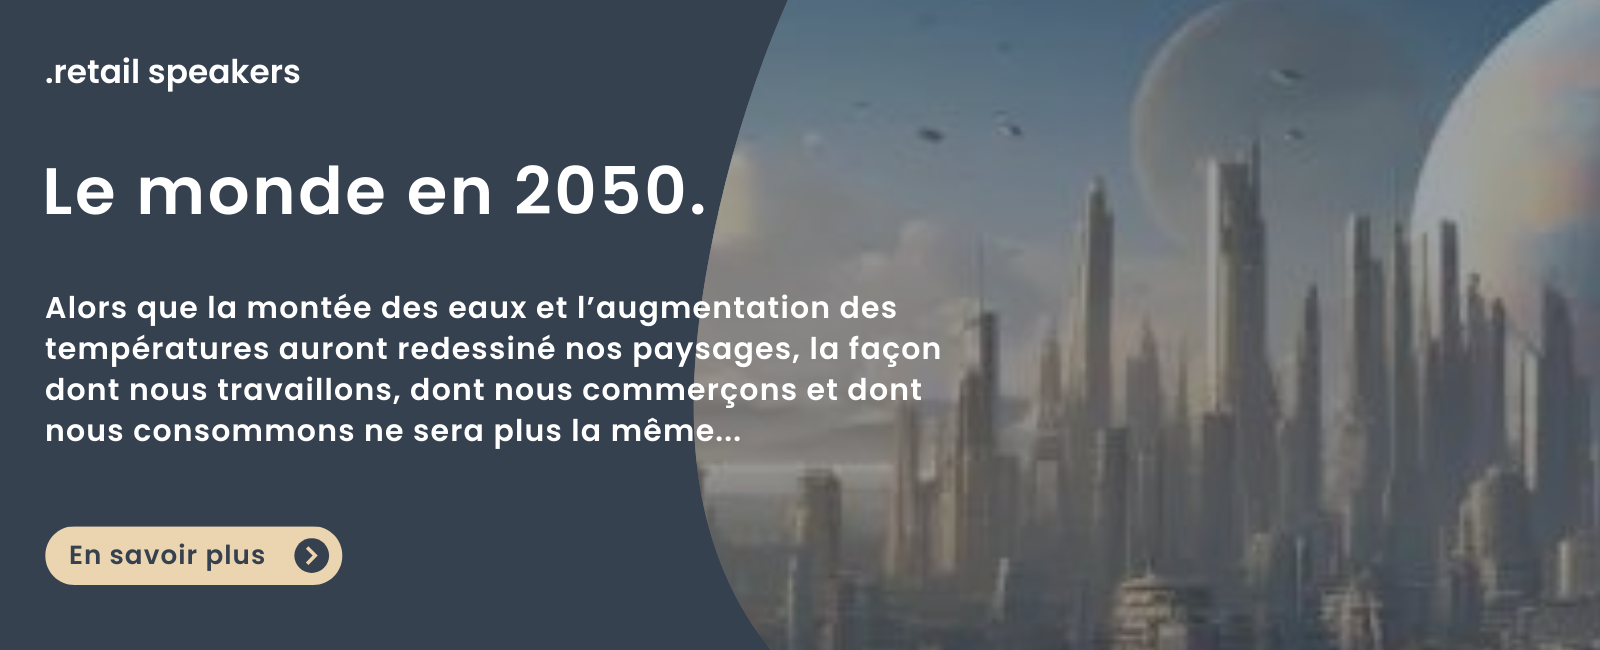 Bannière retail 2050